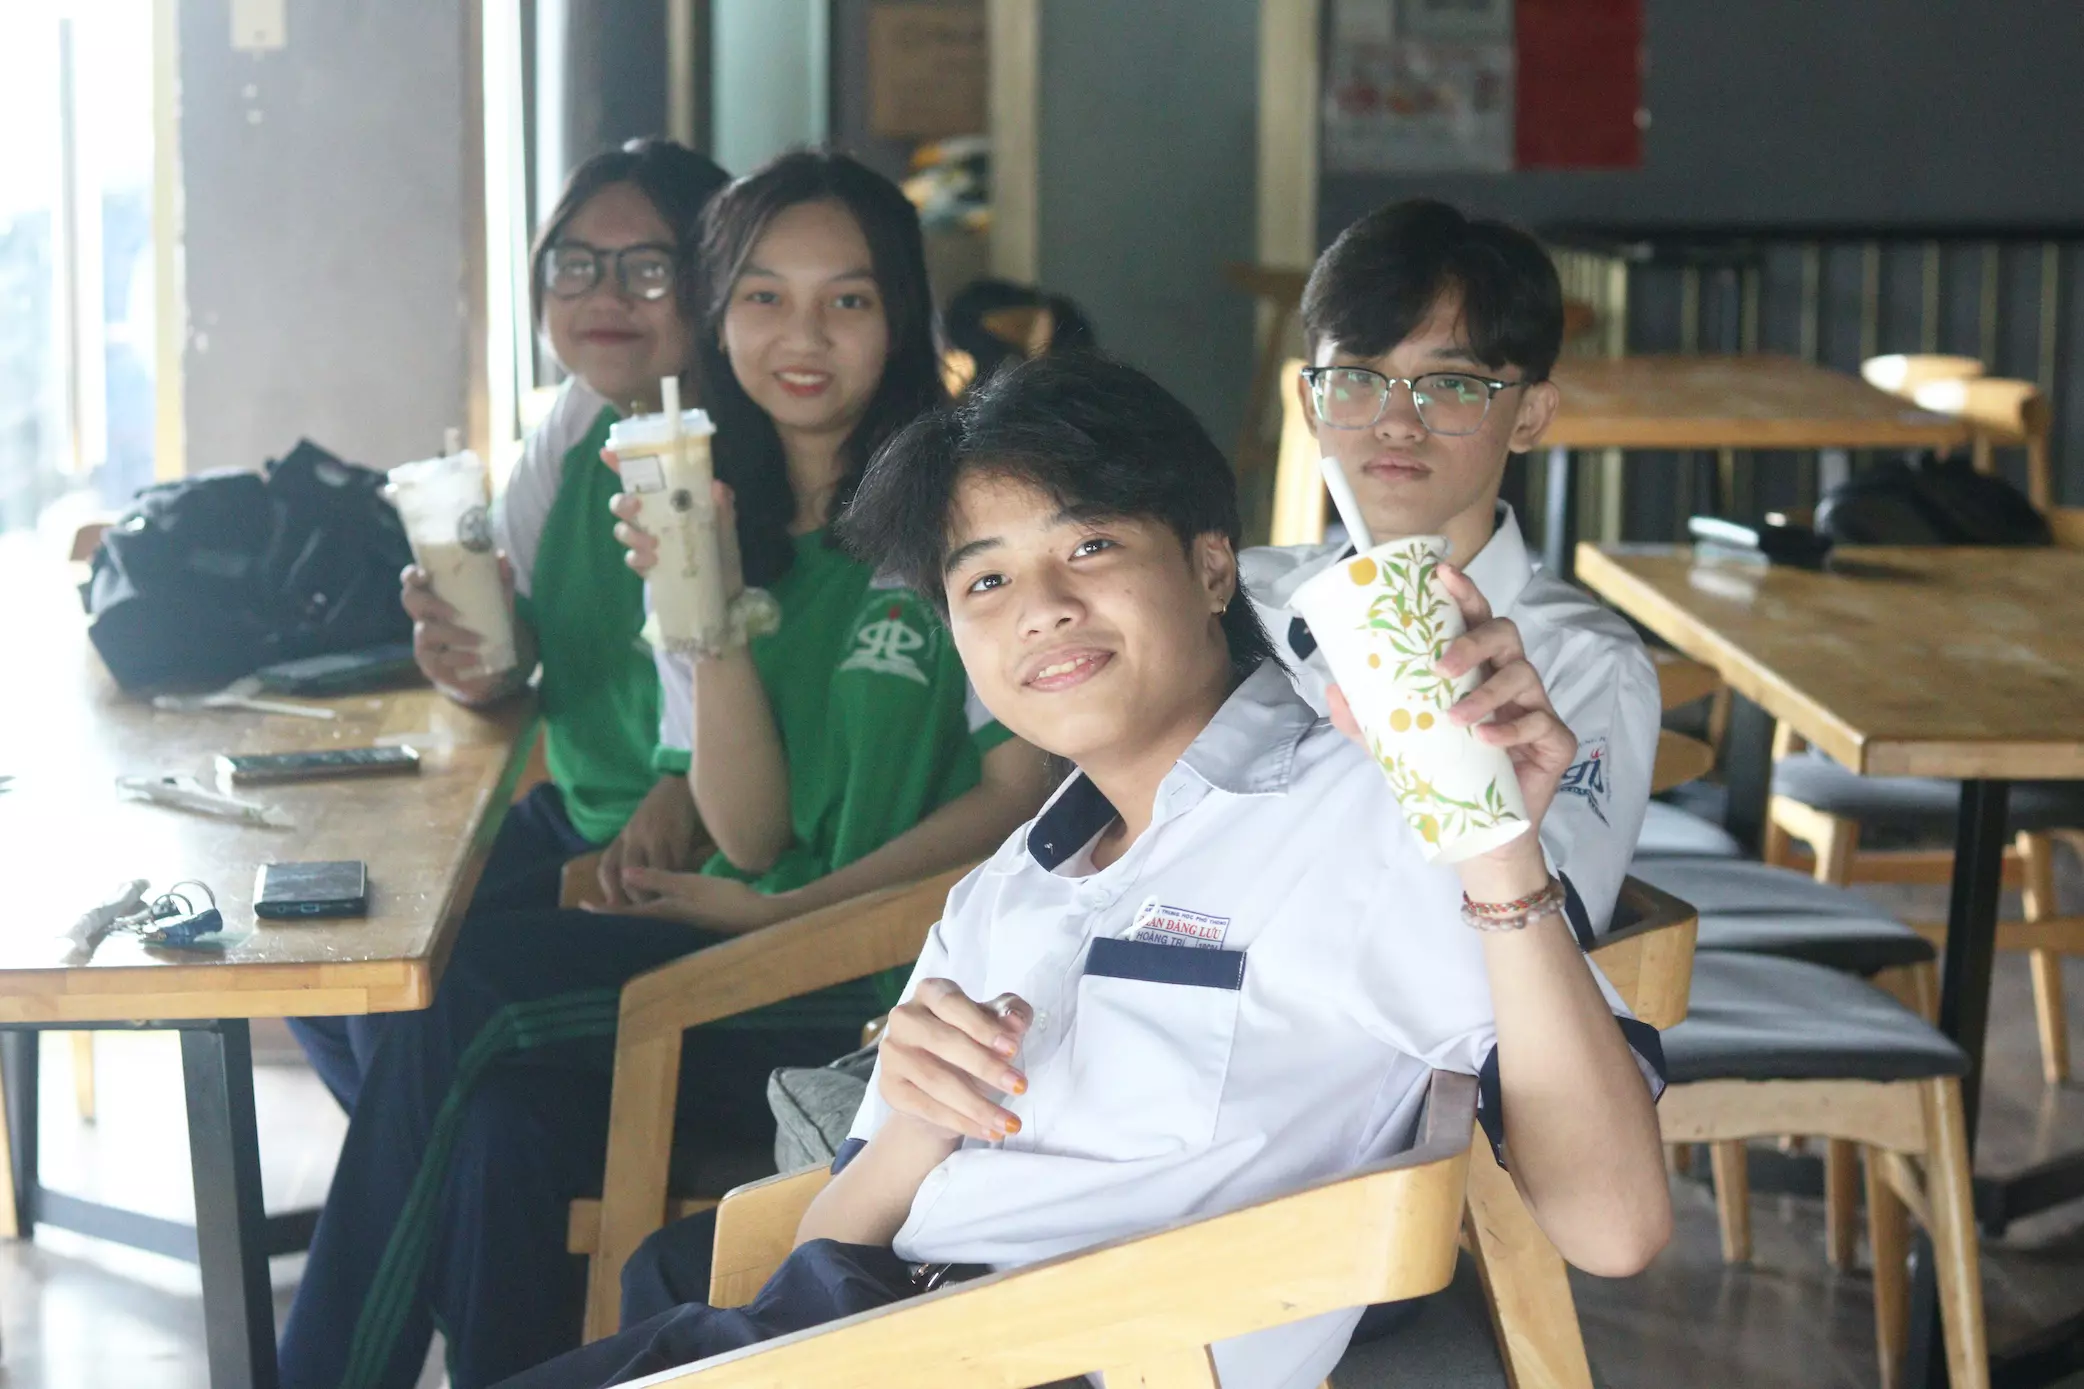 học sinh, sinh viên là tệp khách hàng tiềm năng của các quán trà sữa